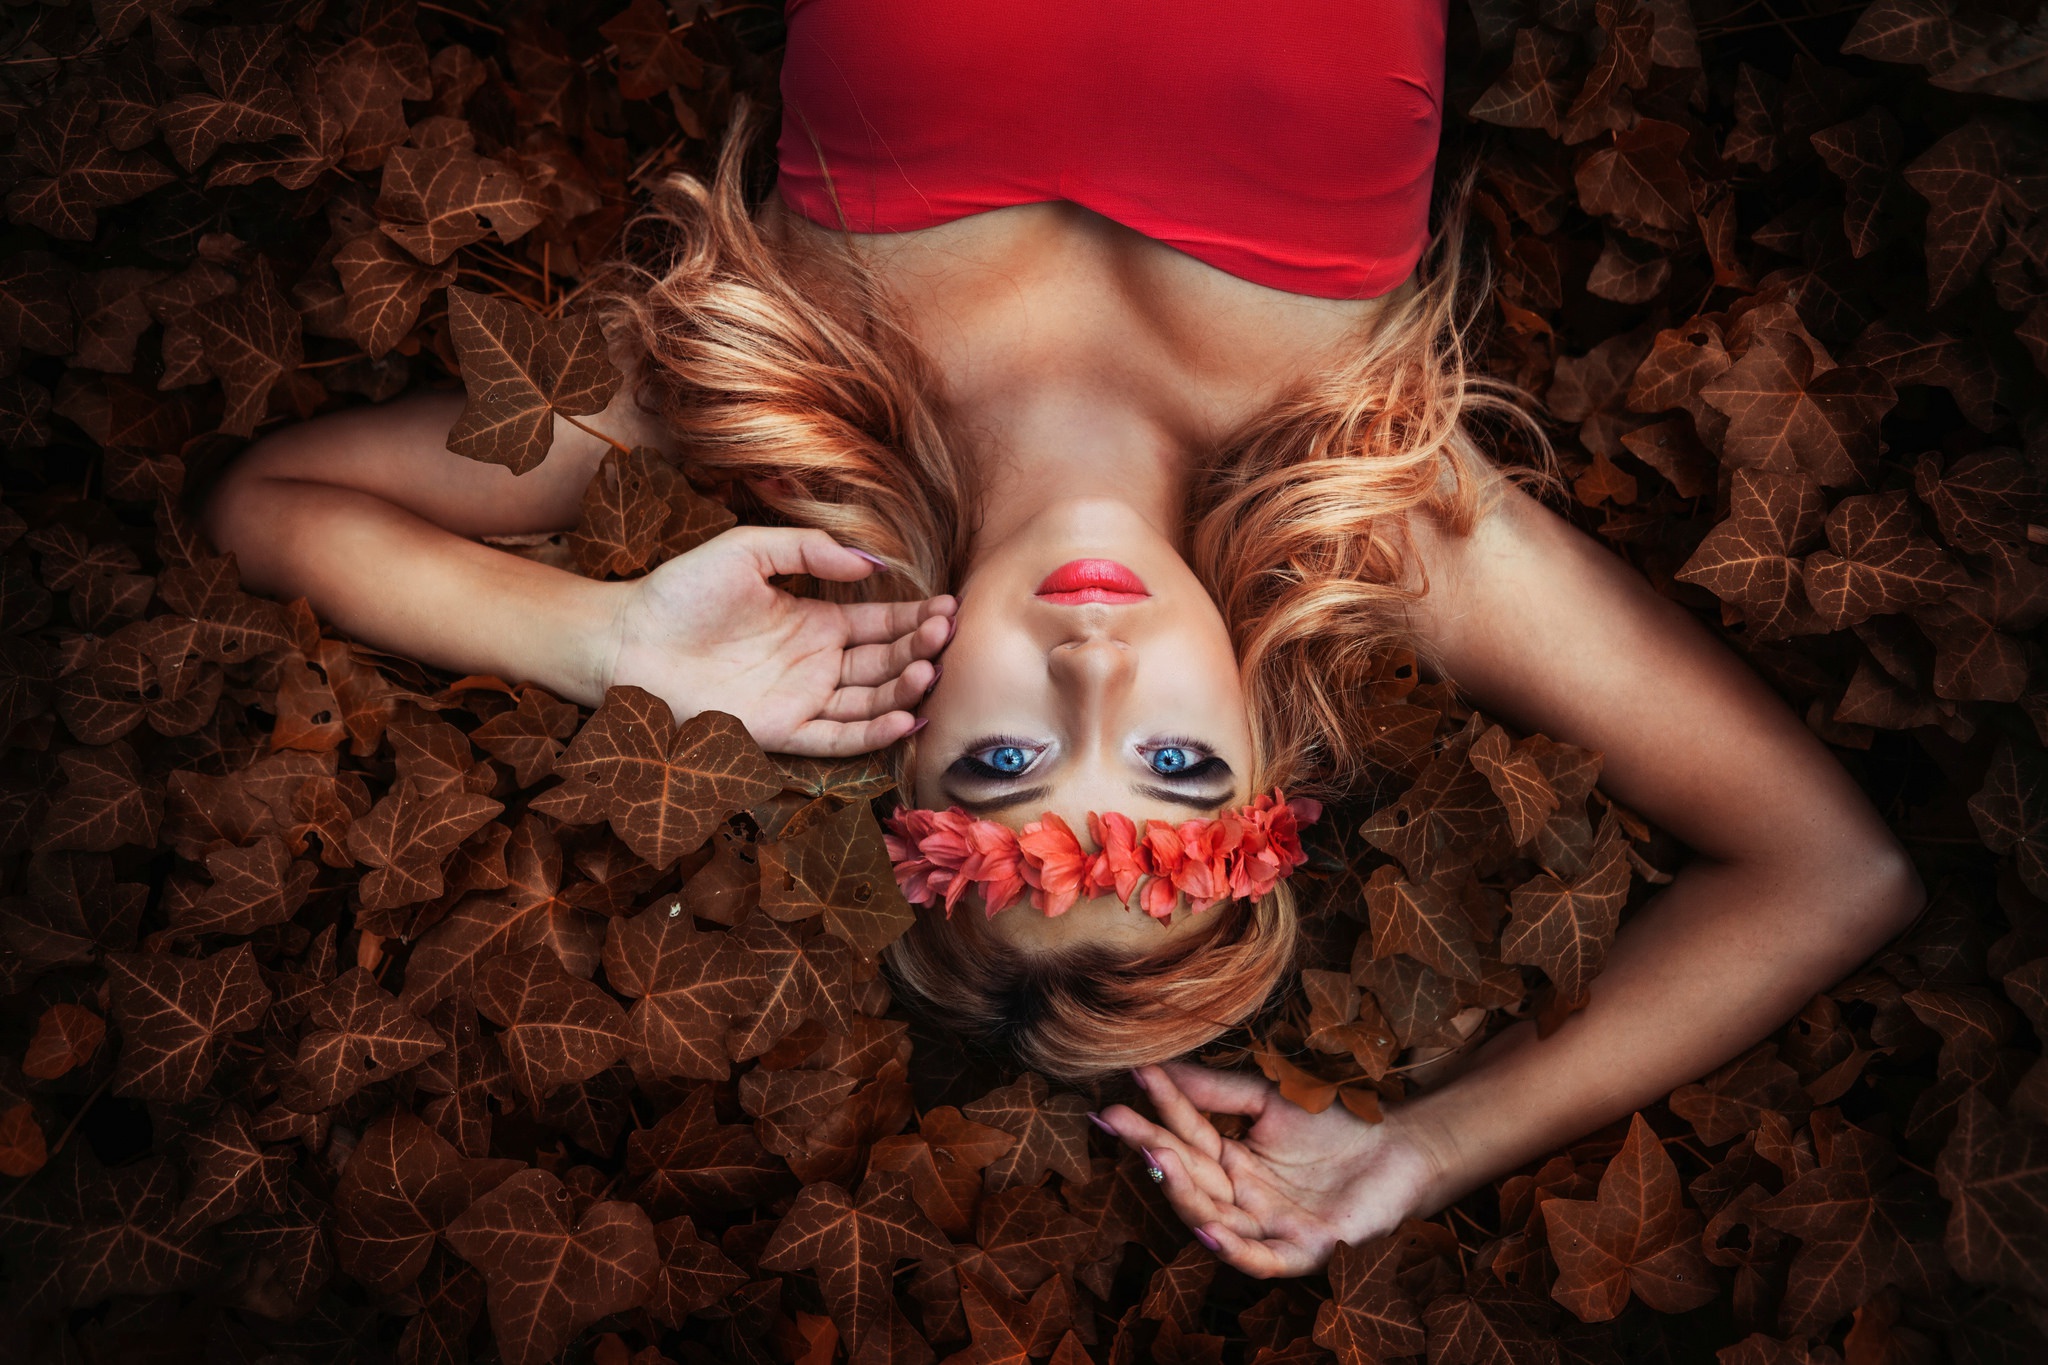 Free download wallpaper Blonde, Wreath, Model, Women, Blue Eyes, Lipstick, Lying Down on your PC desktop